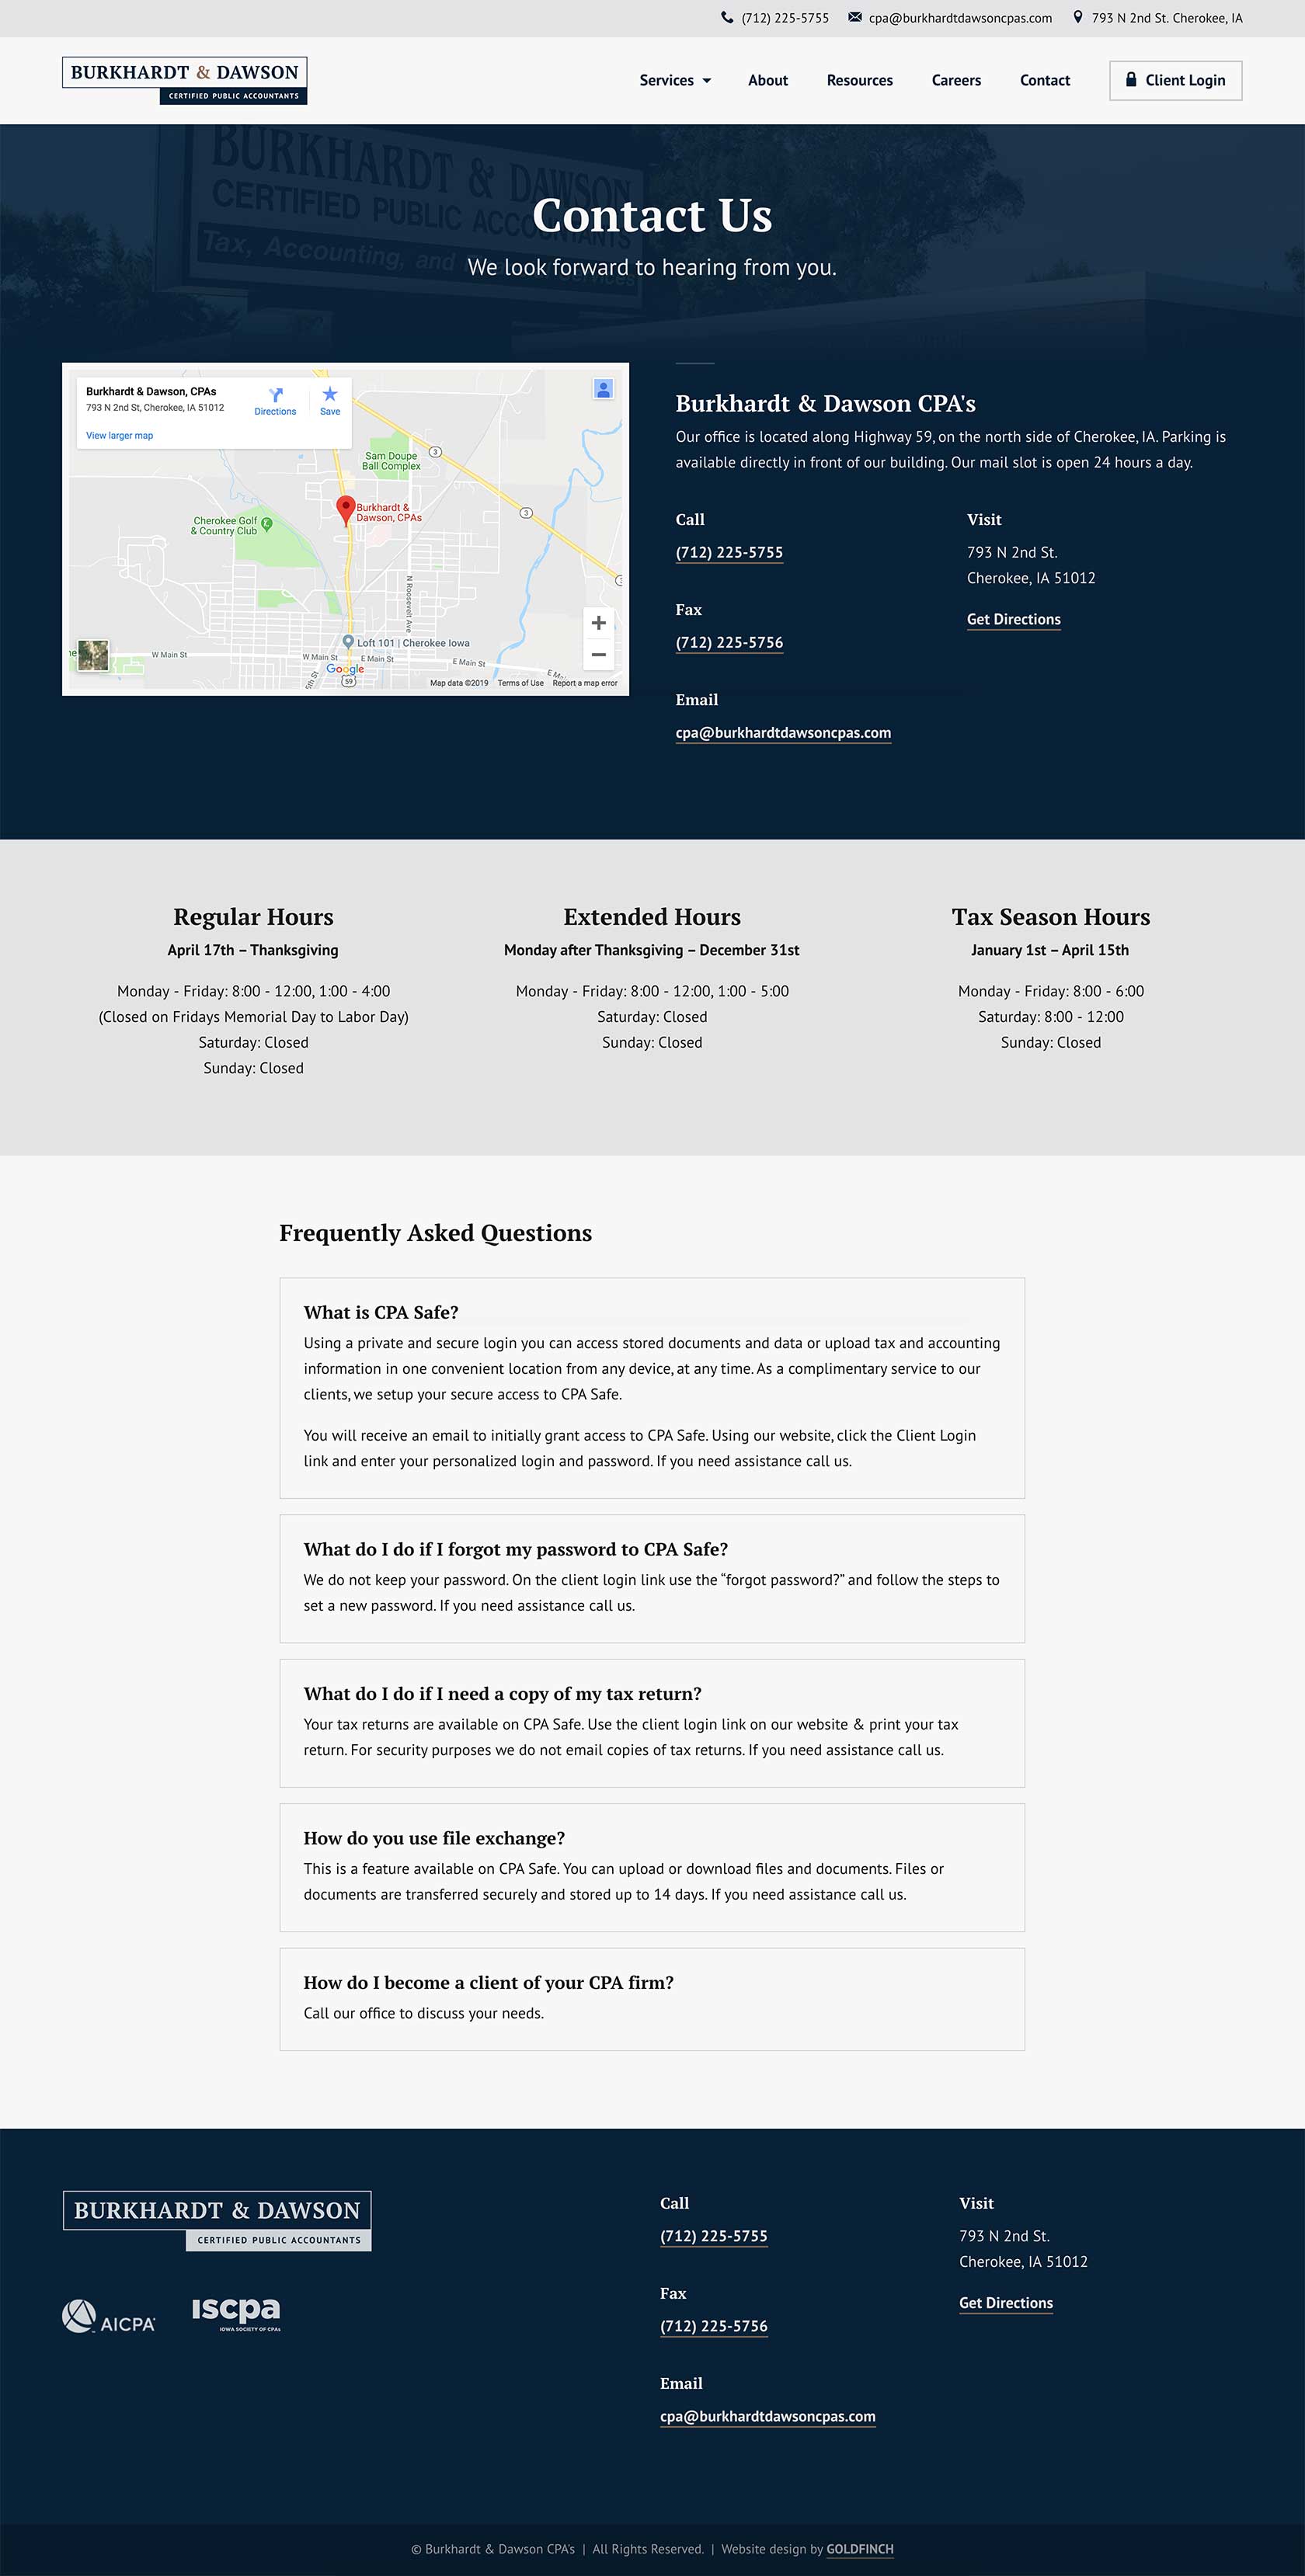 Burkhardt & Dawson CPA's Contact Page Web Design